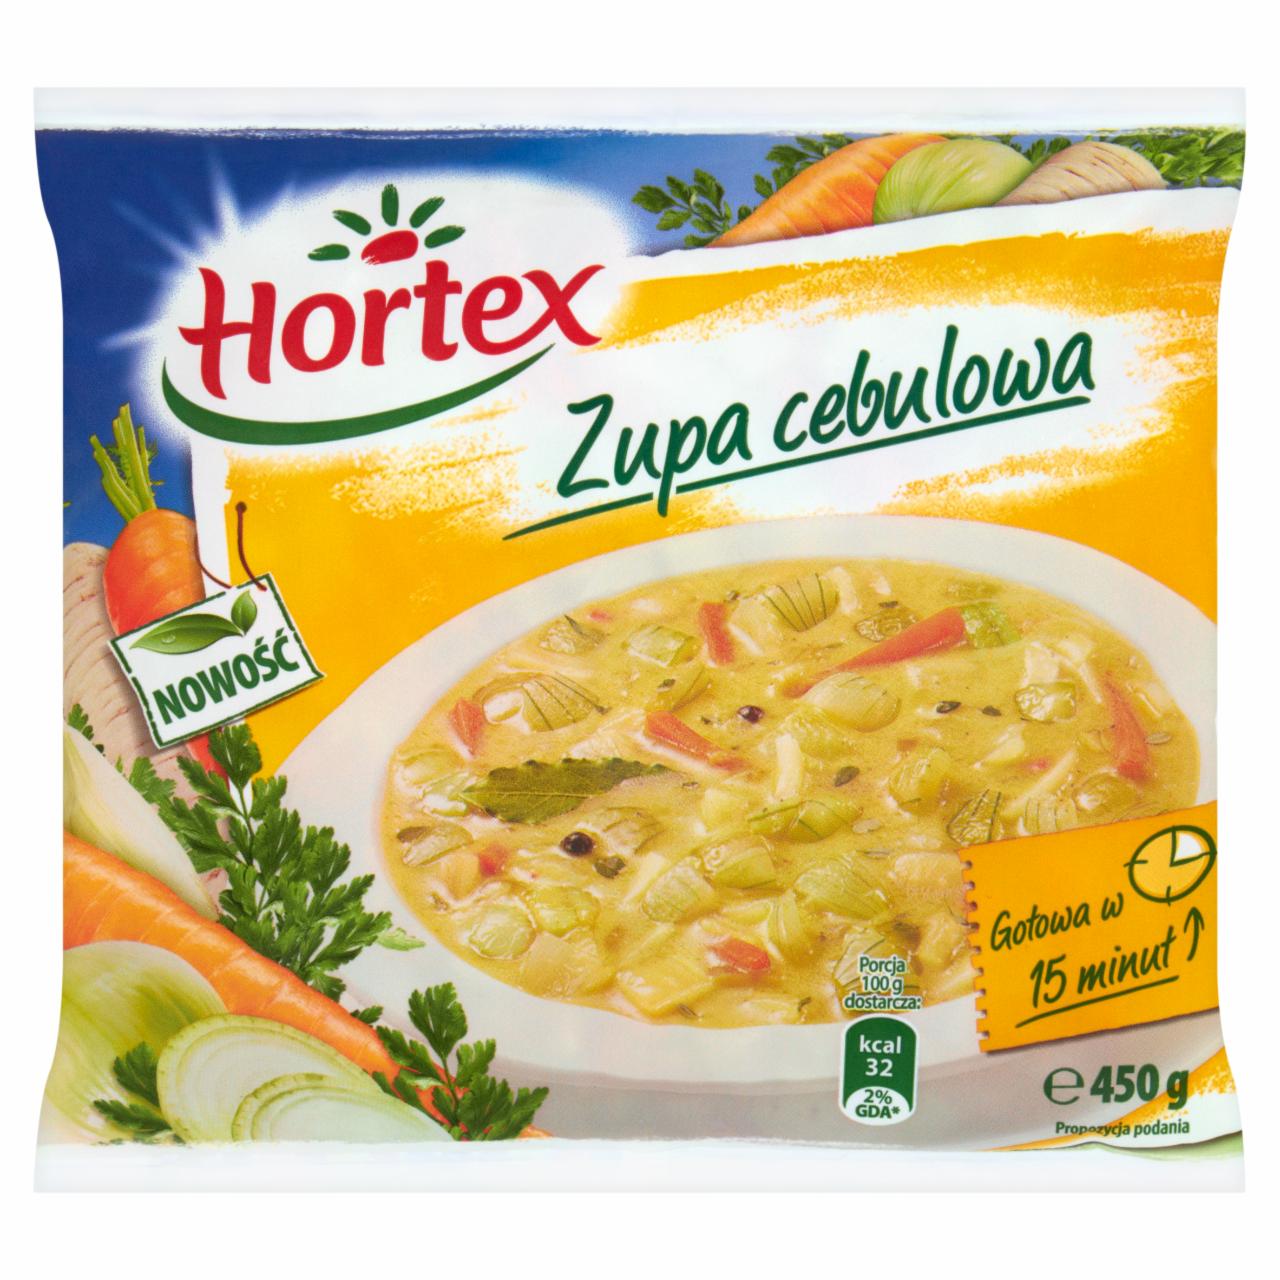 Zdjęcia - Hortex Zupa cebulowa 450 g